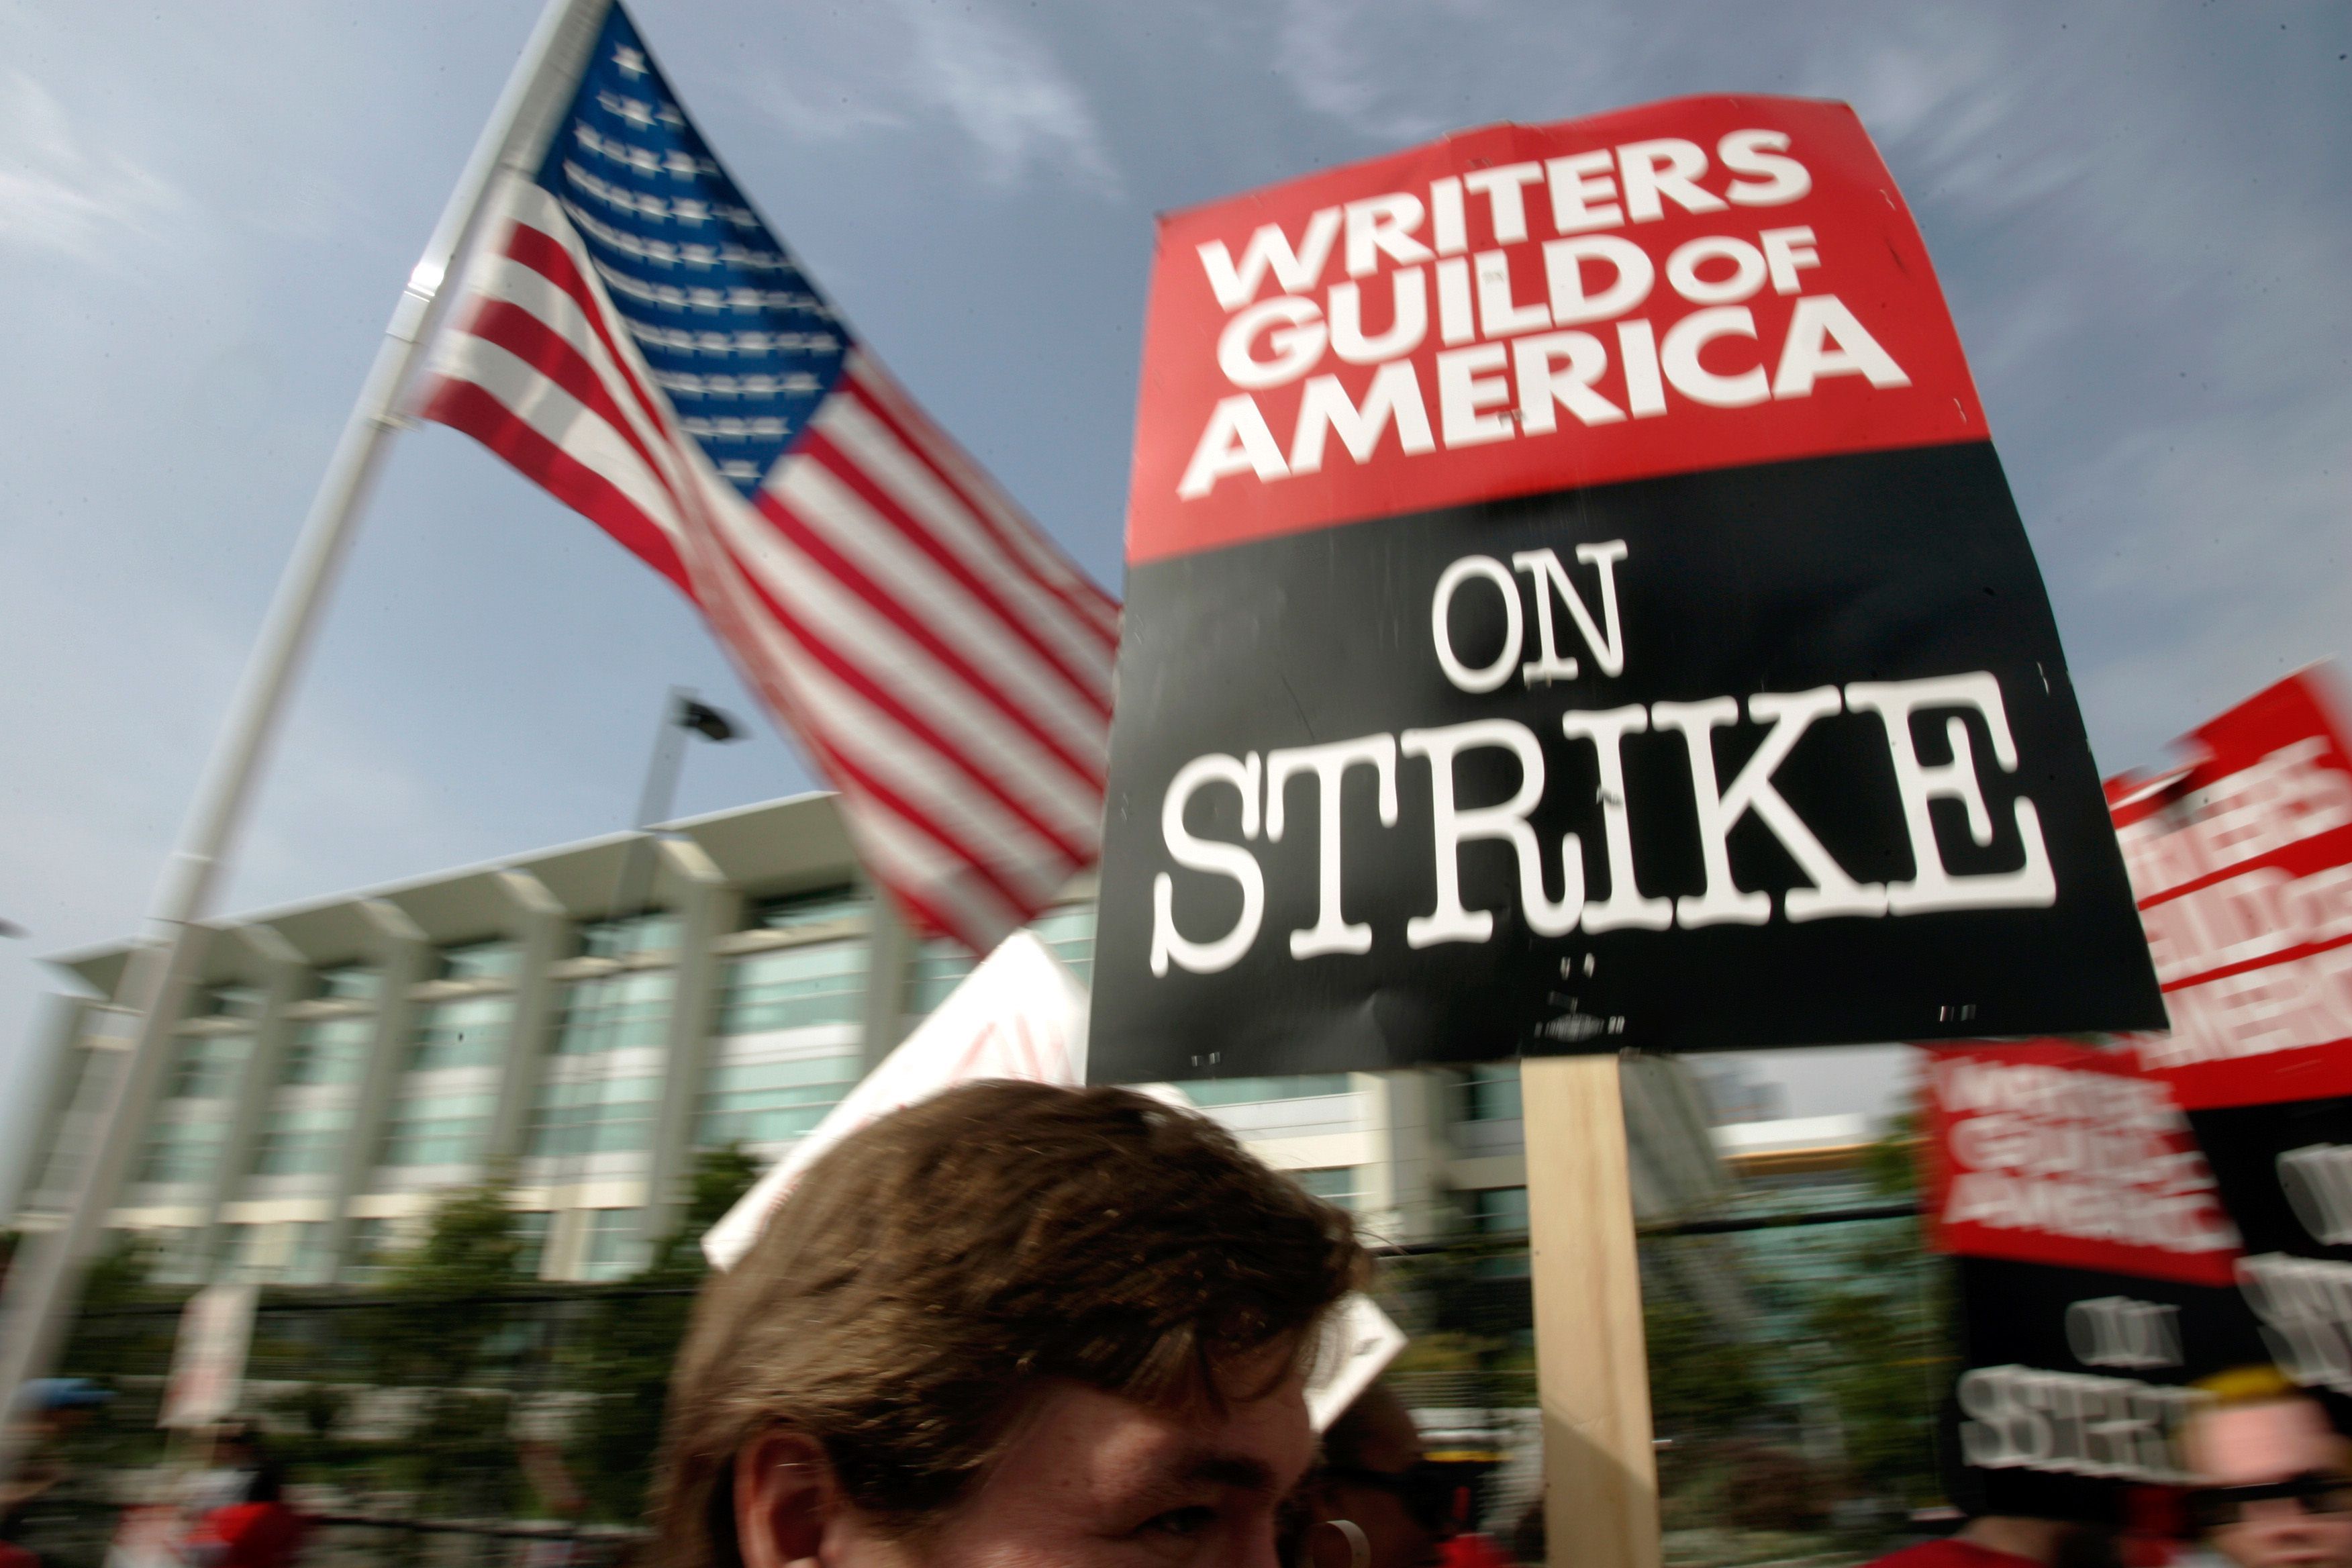 In Hollywood hat die Gewerkschaft der Drehbuchautoren nach erfolglosen Verhandlungen über bessere Arbeitsbedingungen einen Streik ausgerufen.